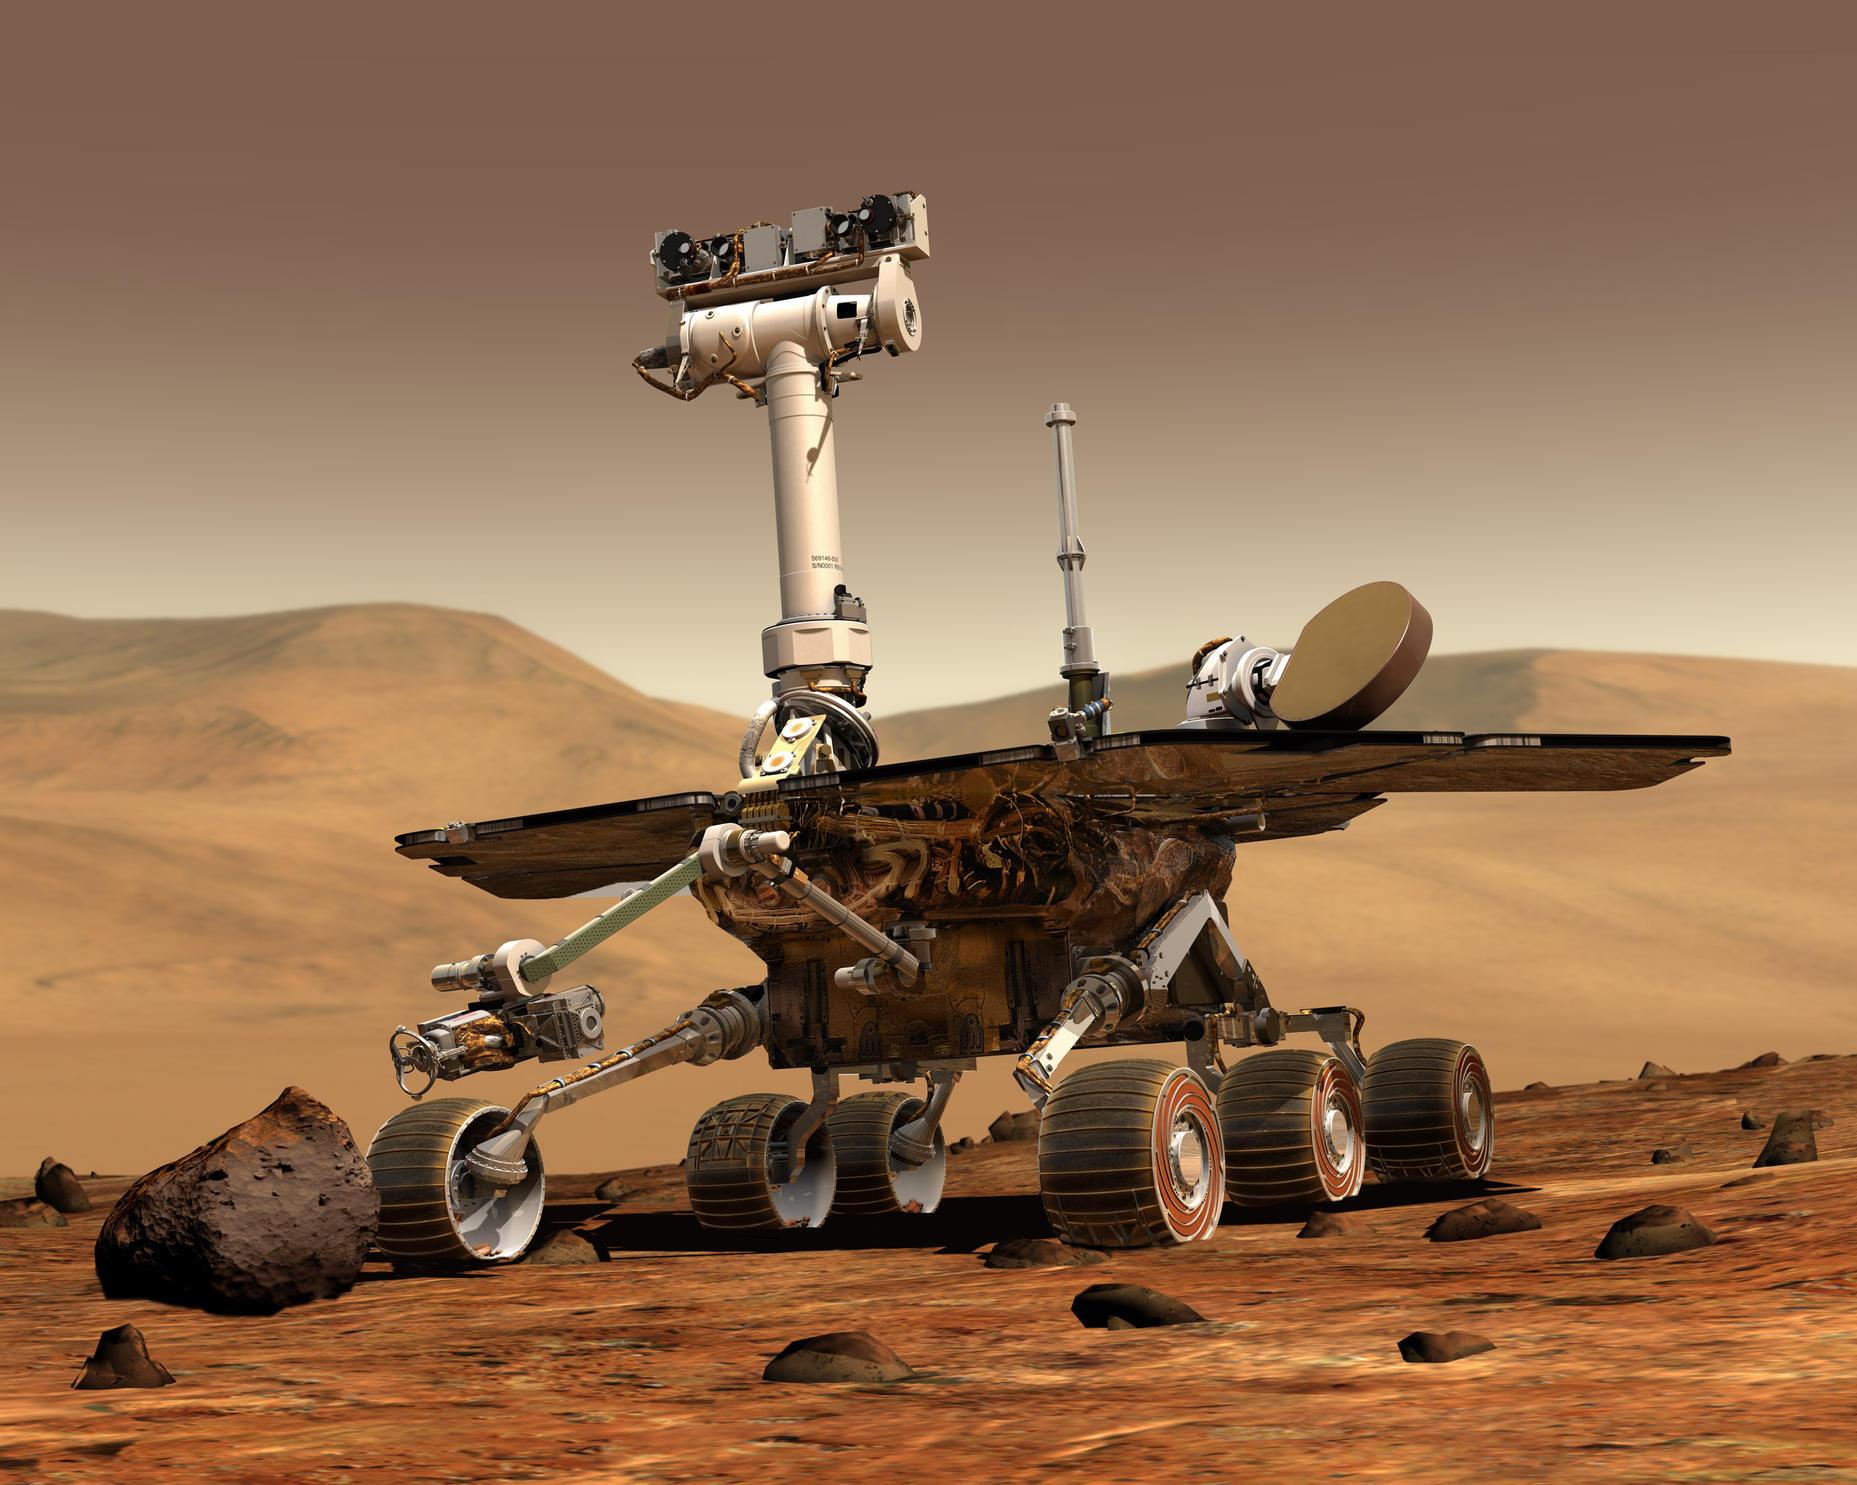 さよなら火星探査機｢オポチュニティ｣。NASAが機能停止を発表 